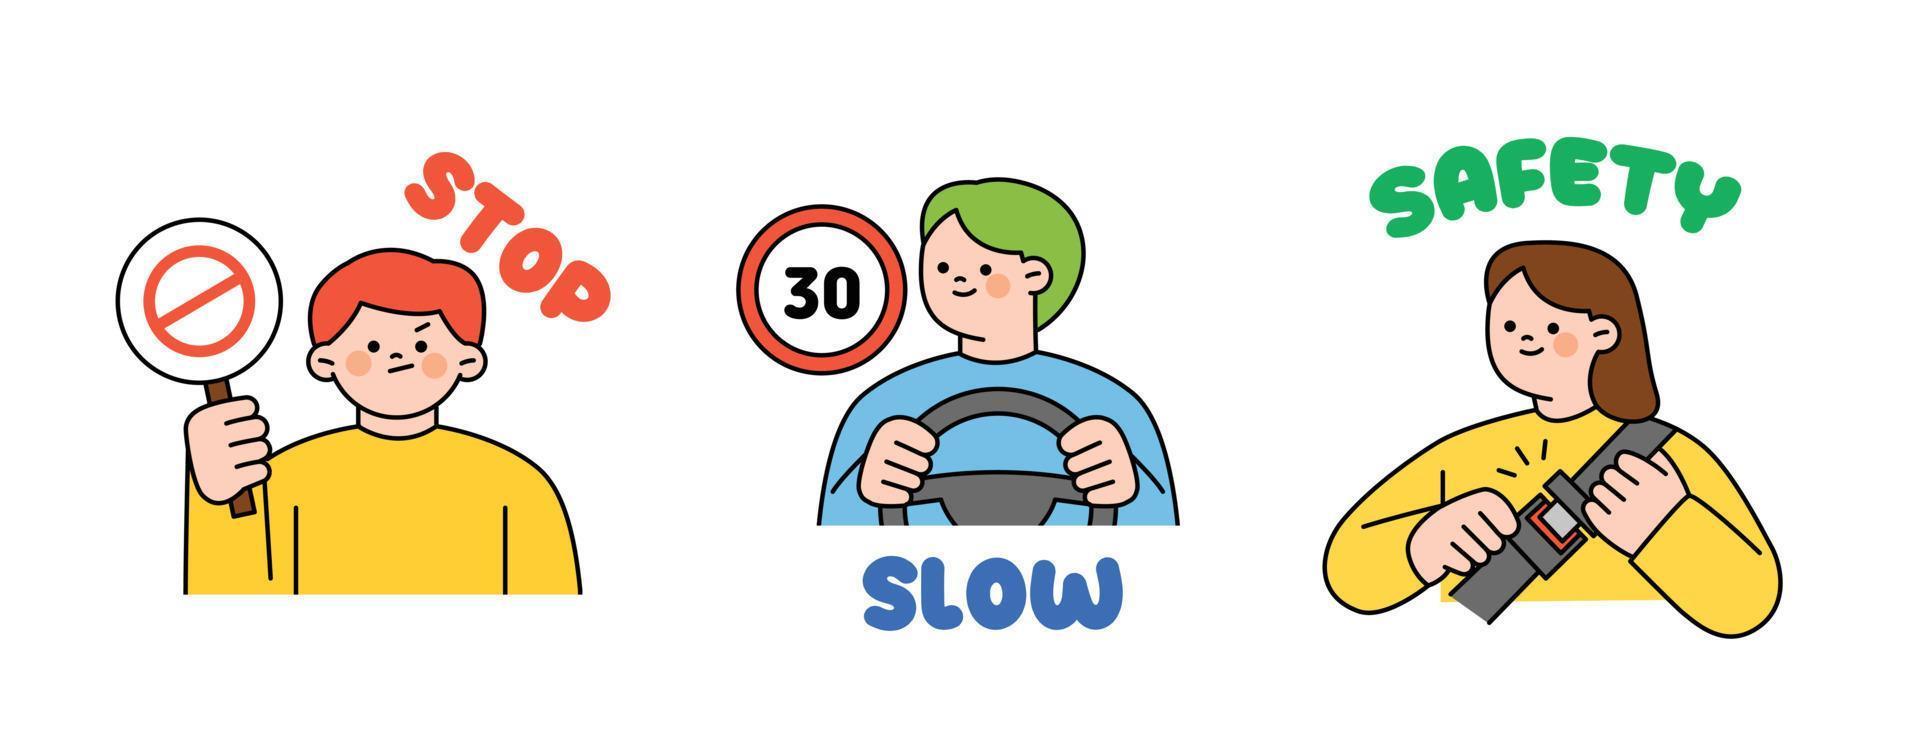 trafik säkerhet manuell för förare. person innehav en sluta tecken. man körning och hastighet tecken. en person bär en sittplats bälte. vektor